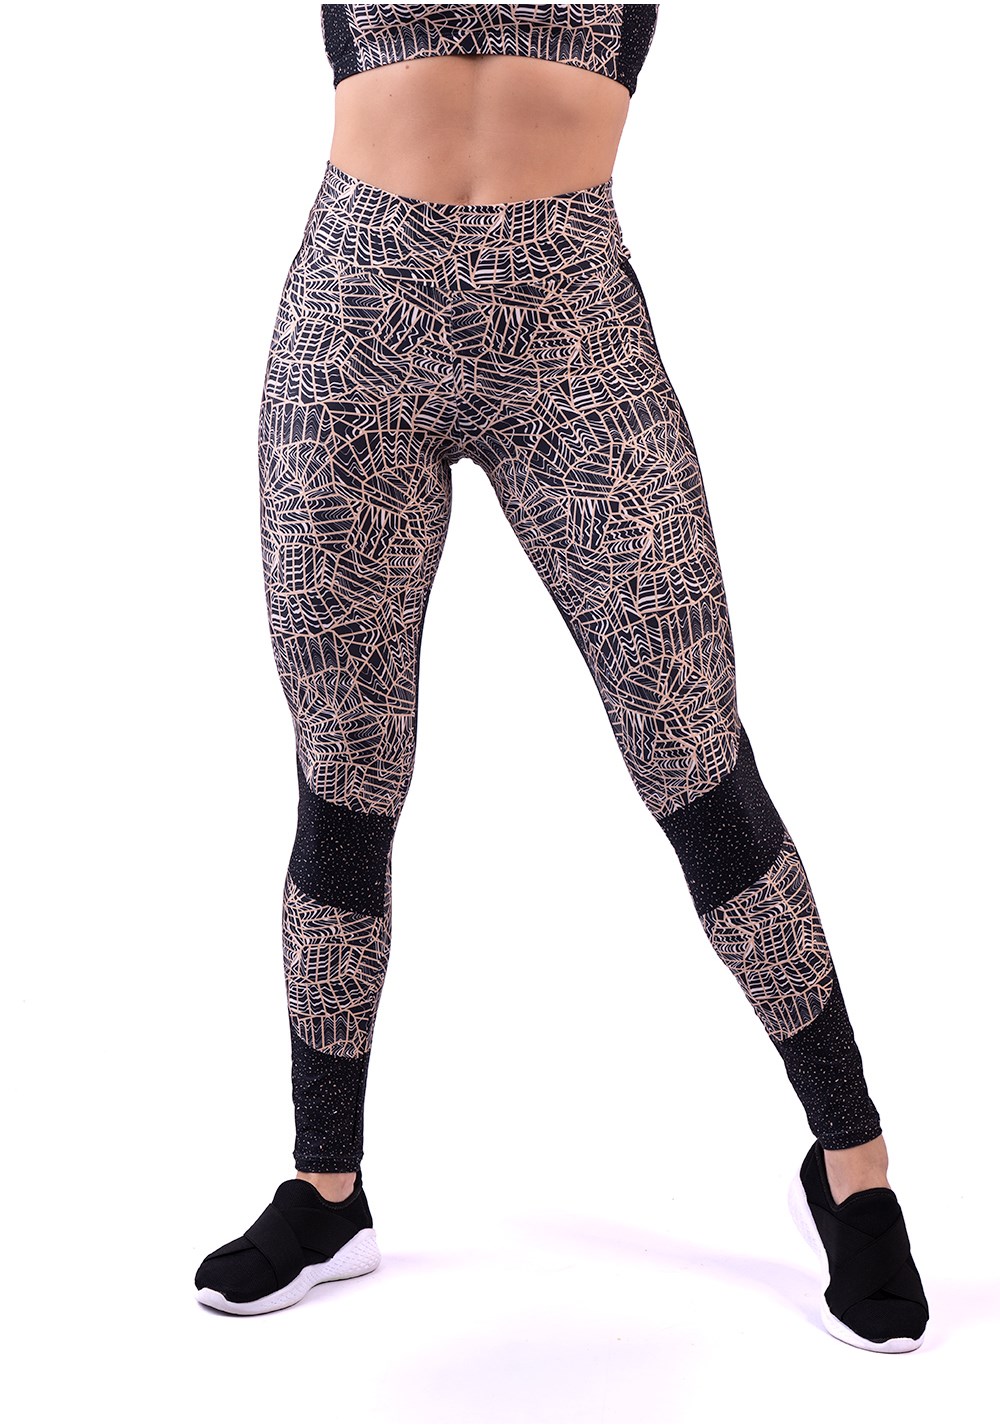 Legging fitness feminina estampada authentic marrom printed